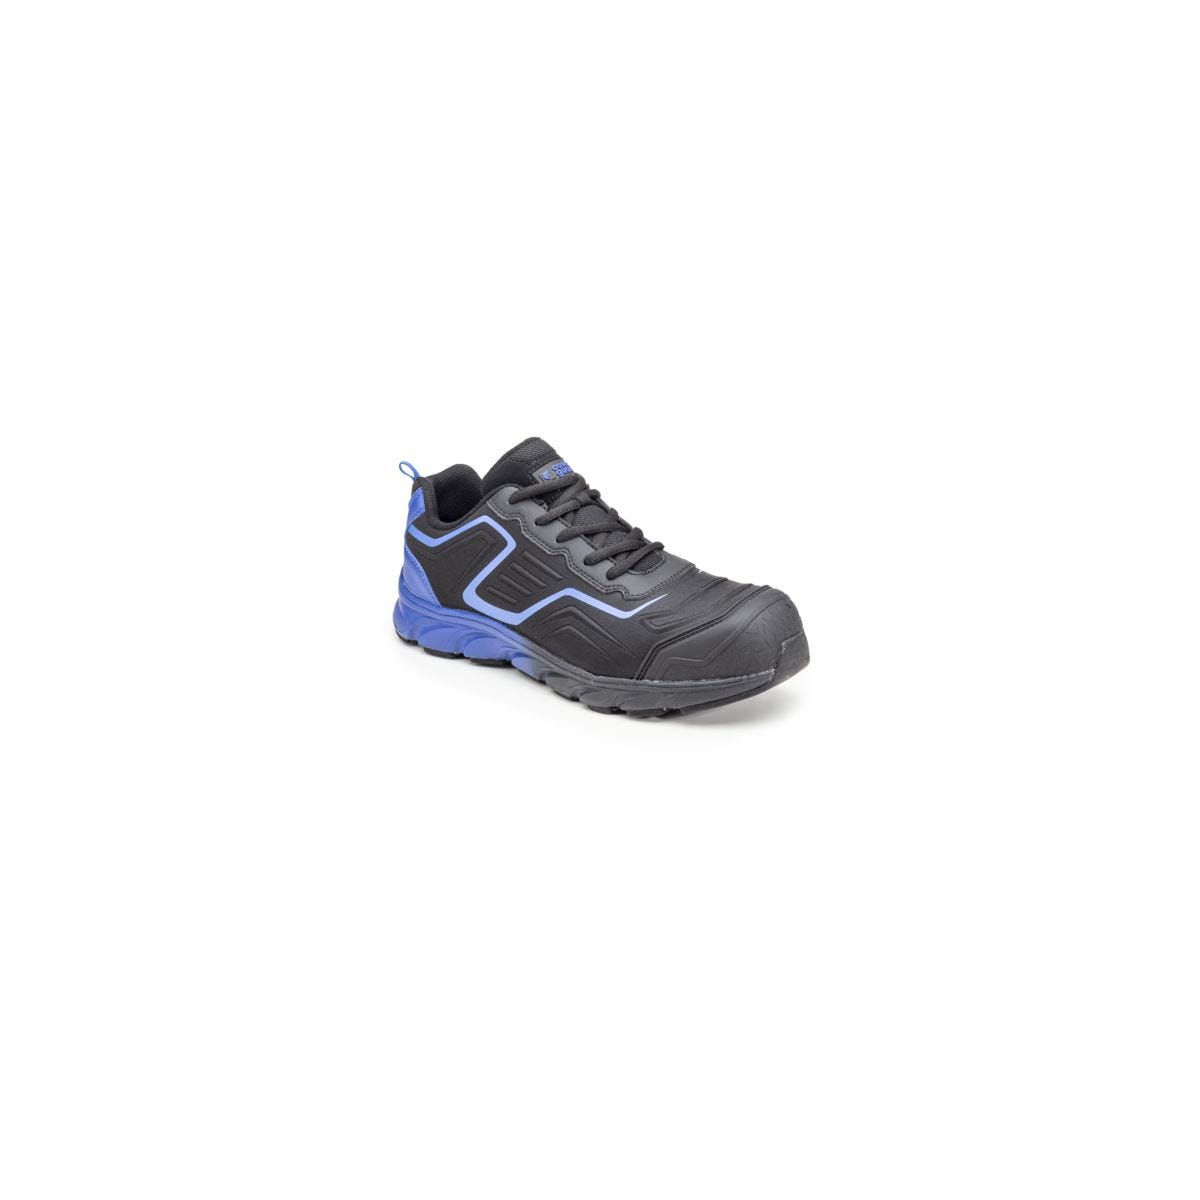 Chaussures de sécurité S3 SAPHIR Basse Maille Noir Bleu - COVERGUARD - Taille 42 0